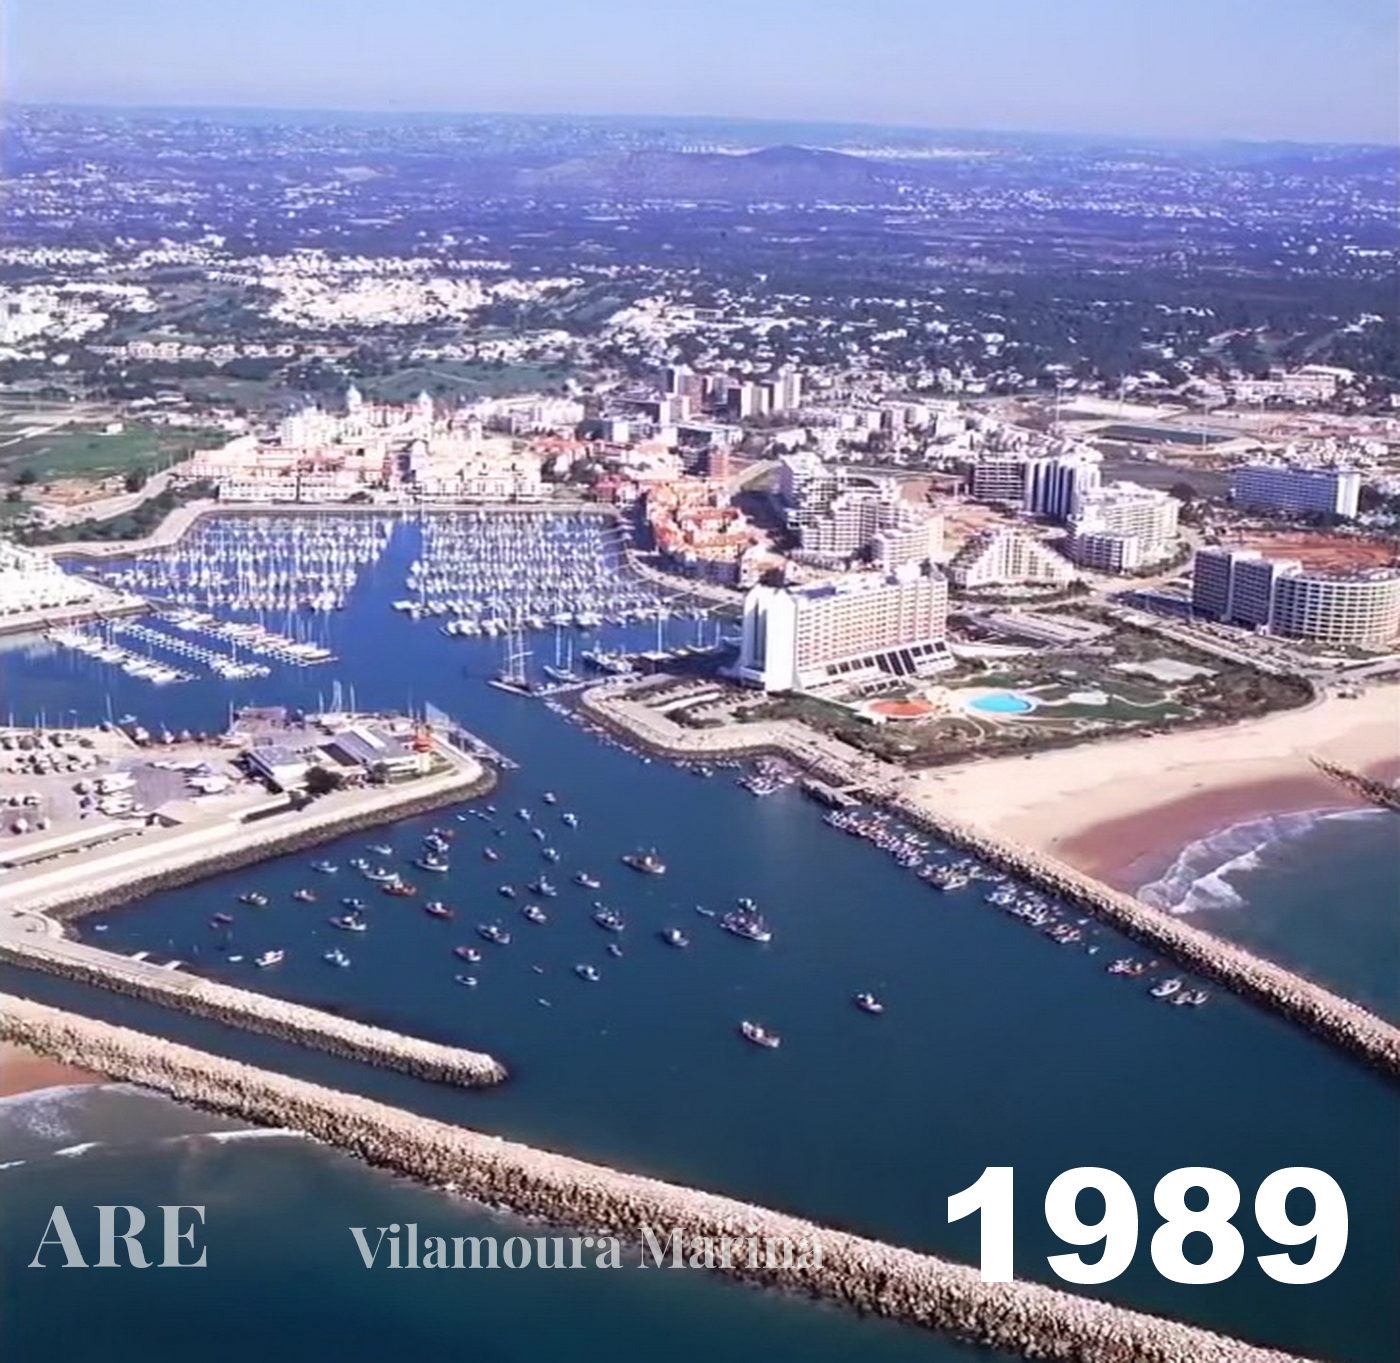 Vista aérea de 1989 de la Marina de Vilamoura ilustrando el desarrollo y transformación en curso de la zona.